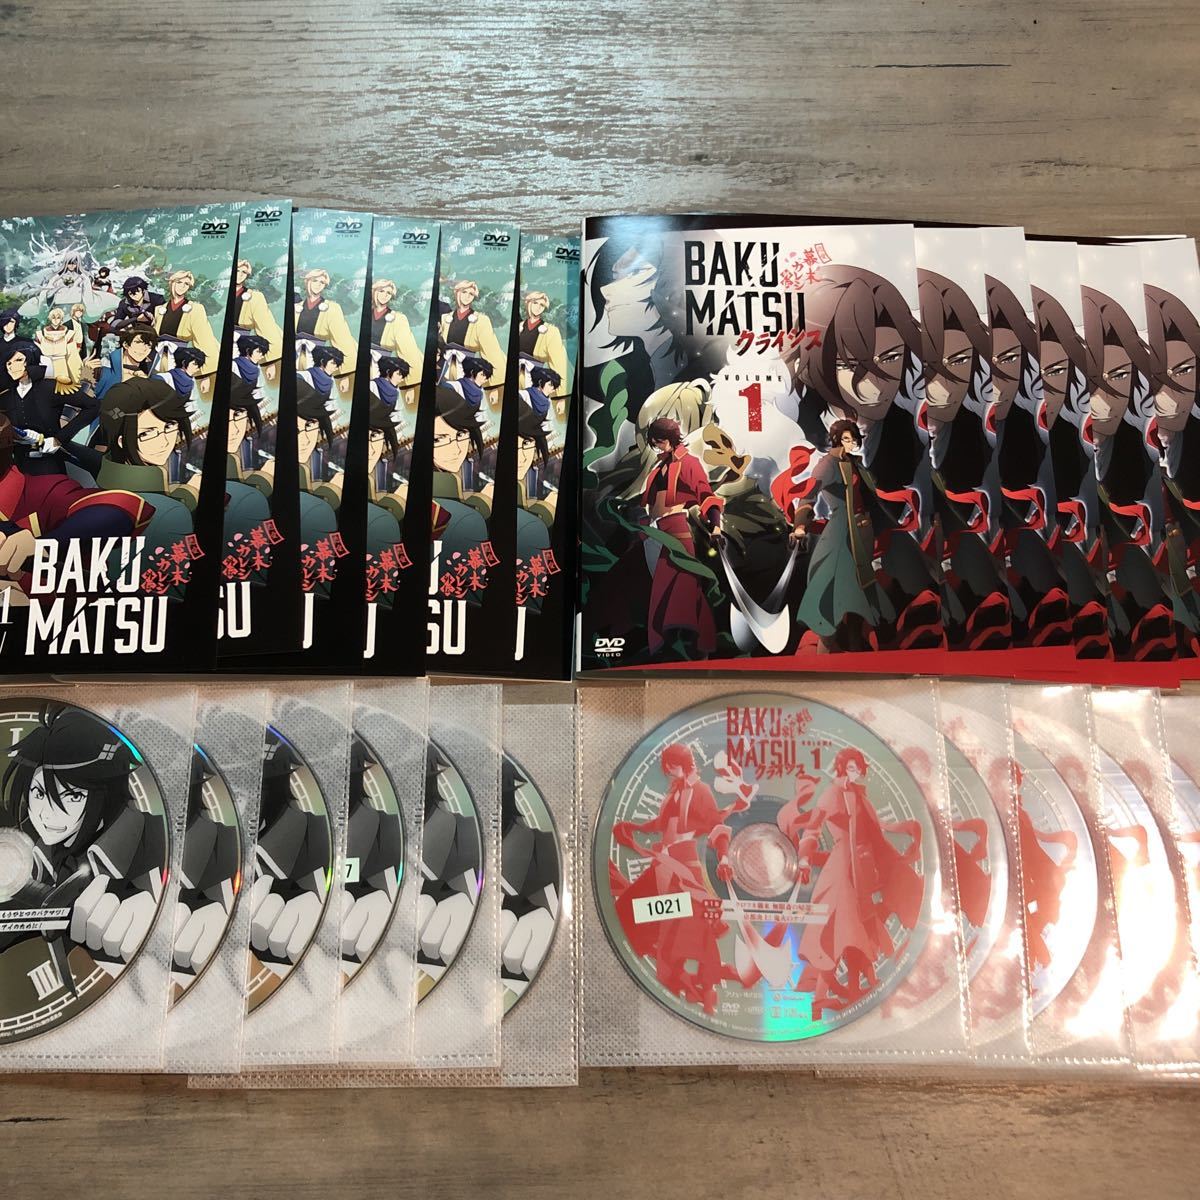 送料無料 DVD BAKUMATSU 恋愛幕末カレシ外伝 全6巻 & BAKUMATSU クライシス 全6巻 / 計12巻セット レンタル使用品 ケースなし